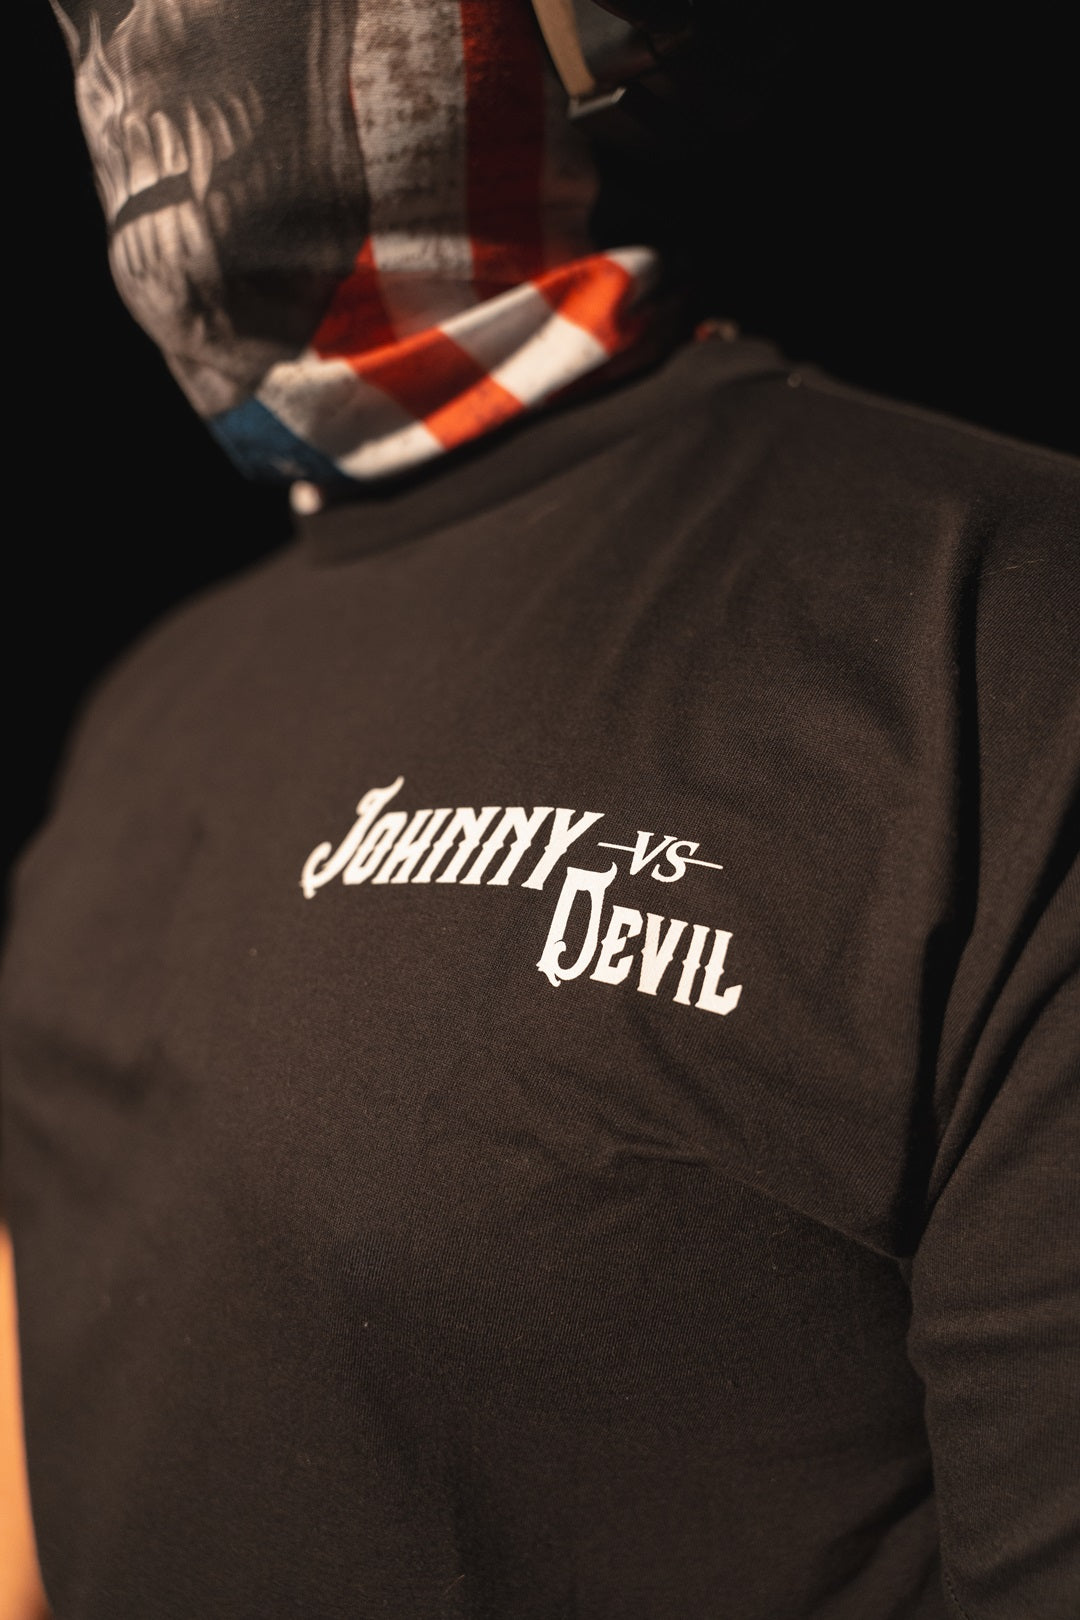 Johnny vs Devil